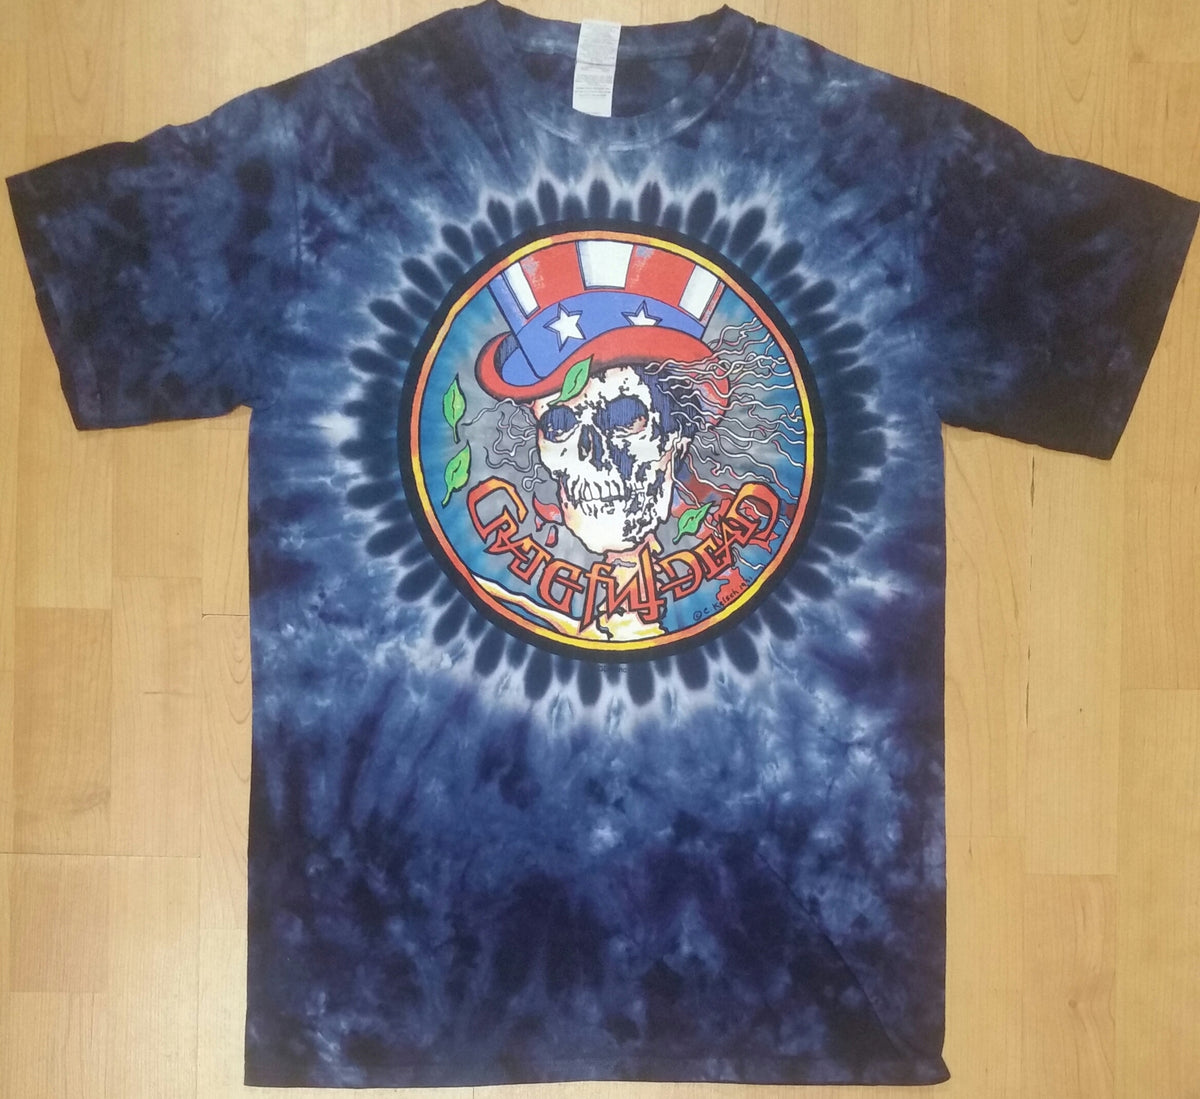 Grateful Dead Carpet Ride Tie Dye T-Shirt SM